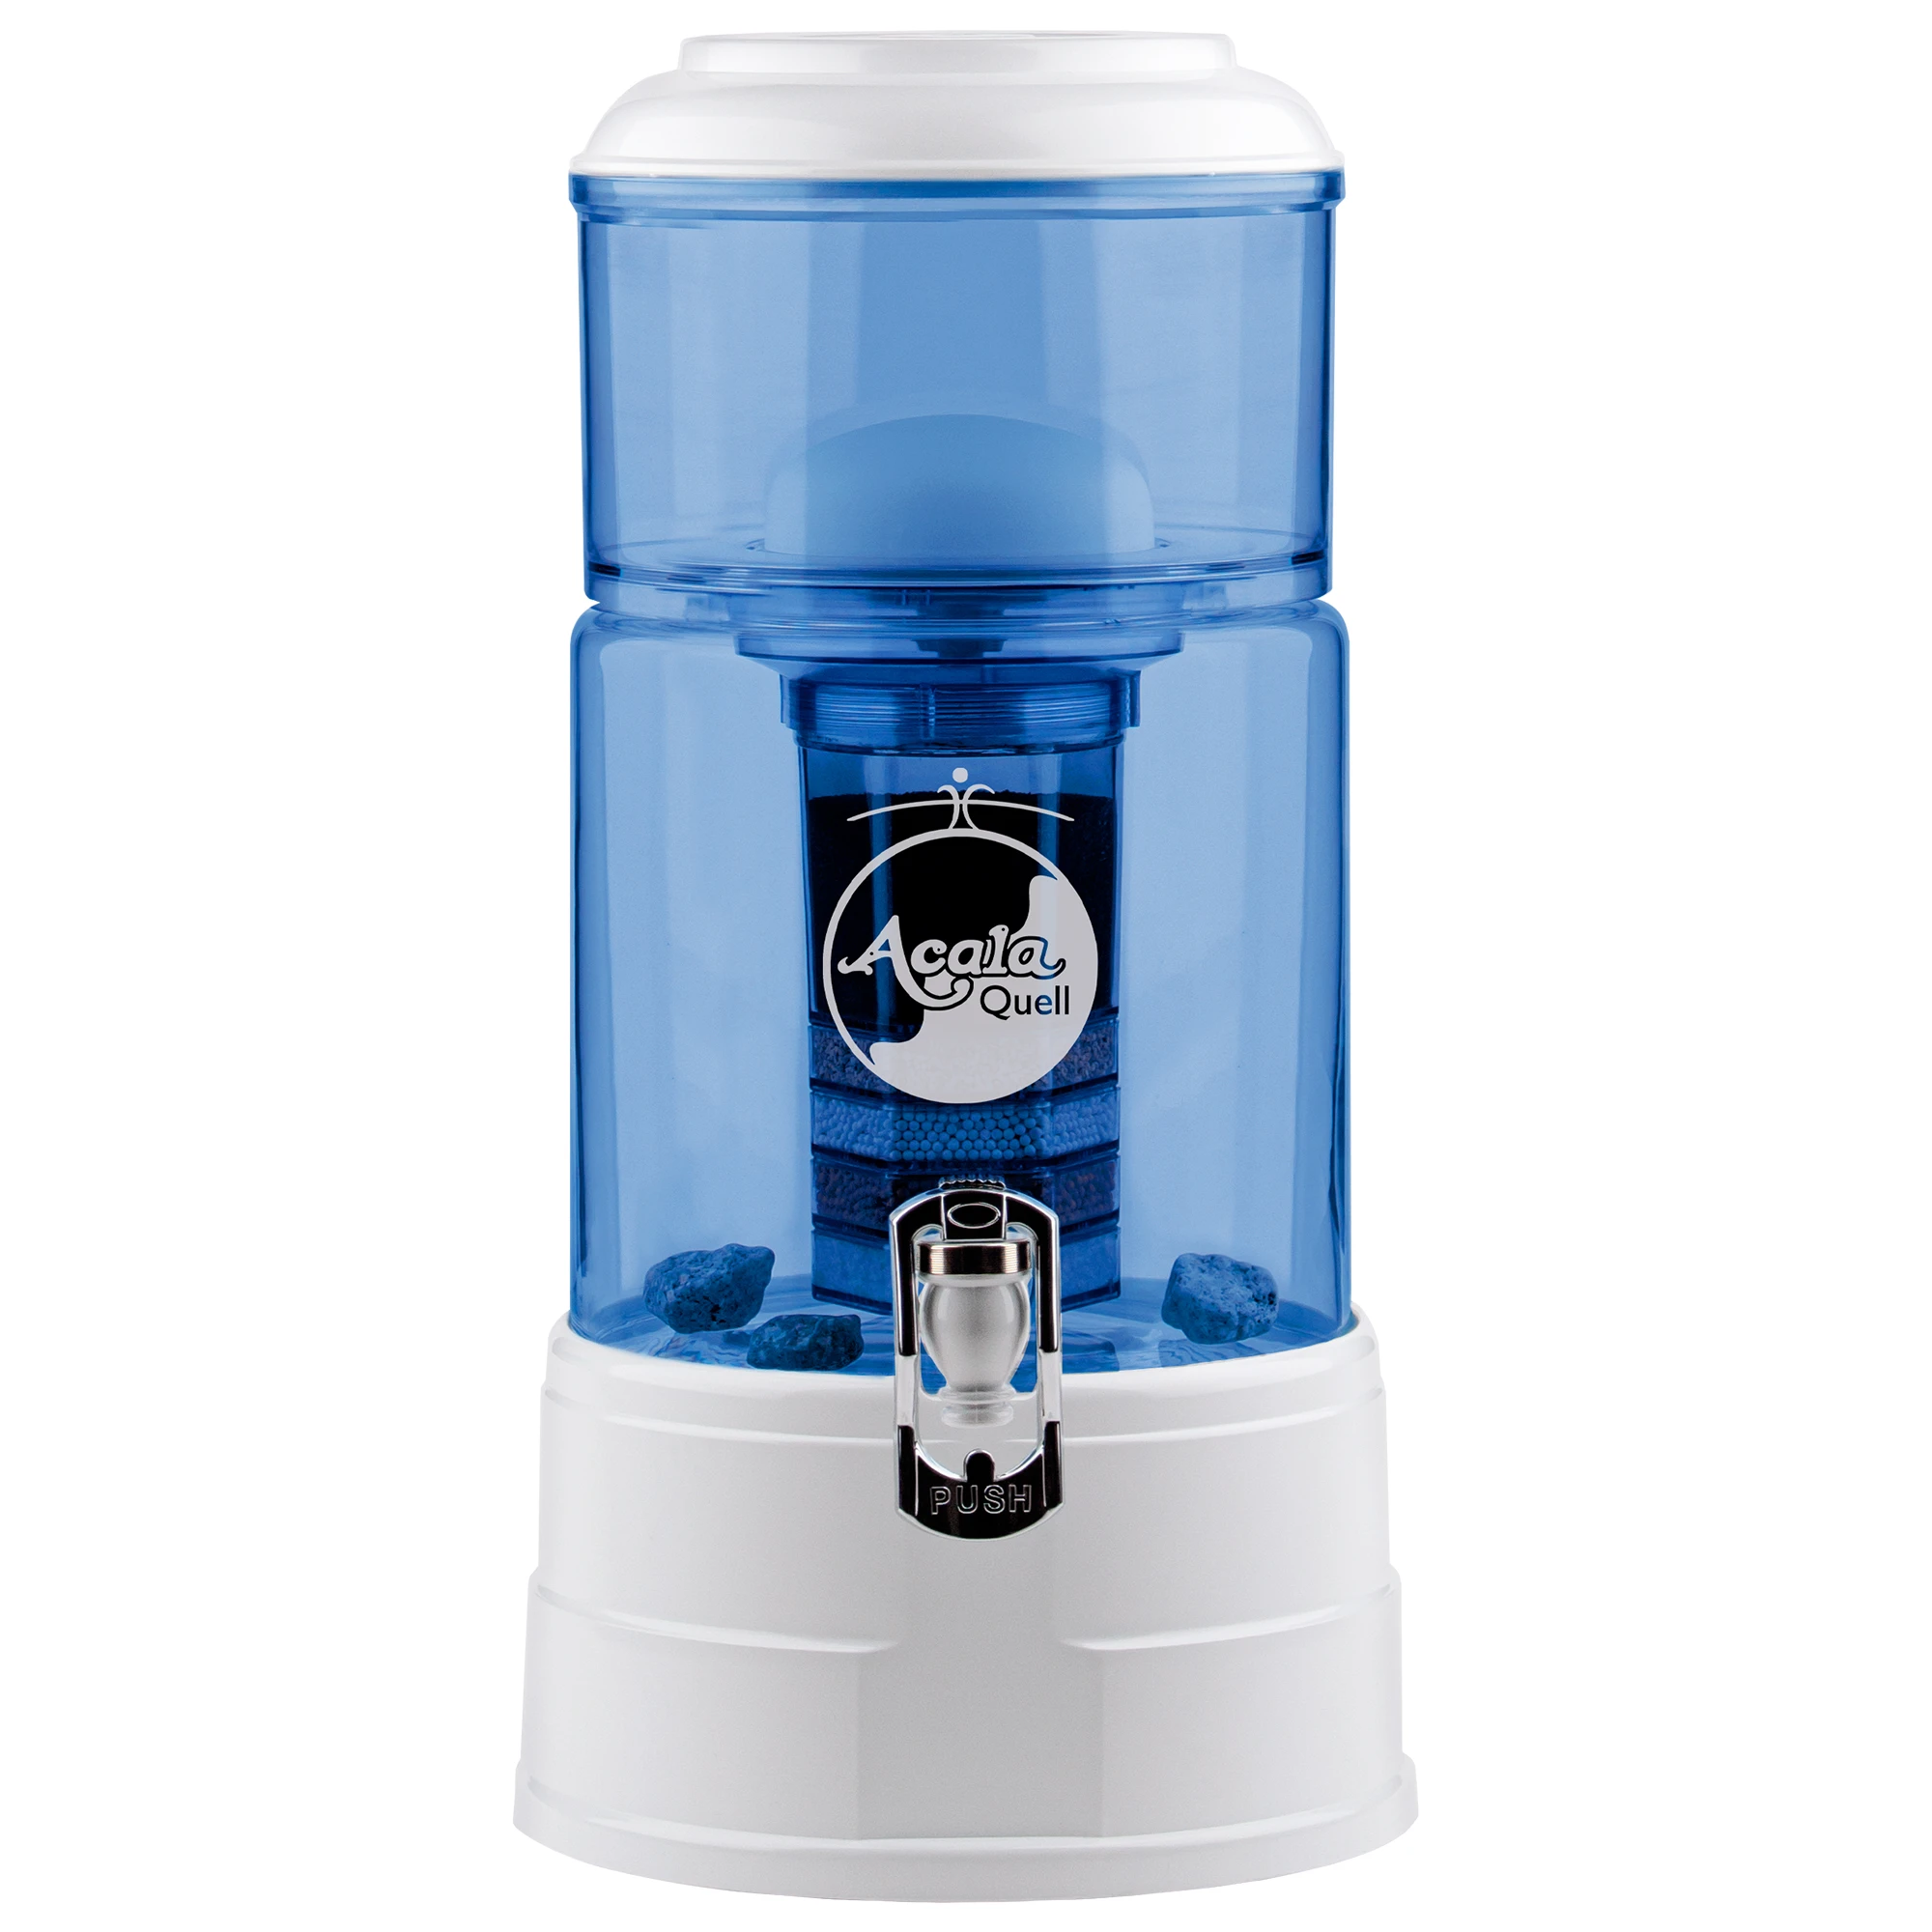 Zu sehen ist der Wasserfilter Mini in blau-weiß inklusive Filterkartusche und Keramikfilter, weißer Hintergrund. Sockel, Deckel und Hahn in weiß. 5L Glastank in blau mit heller Acala Logo Gravur, oberer Einfüllbehälter auch in blau.